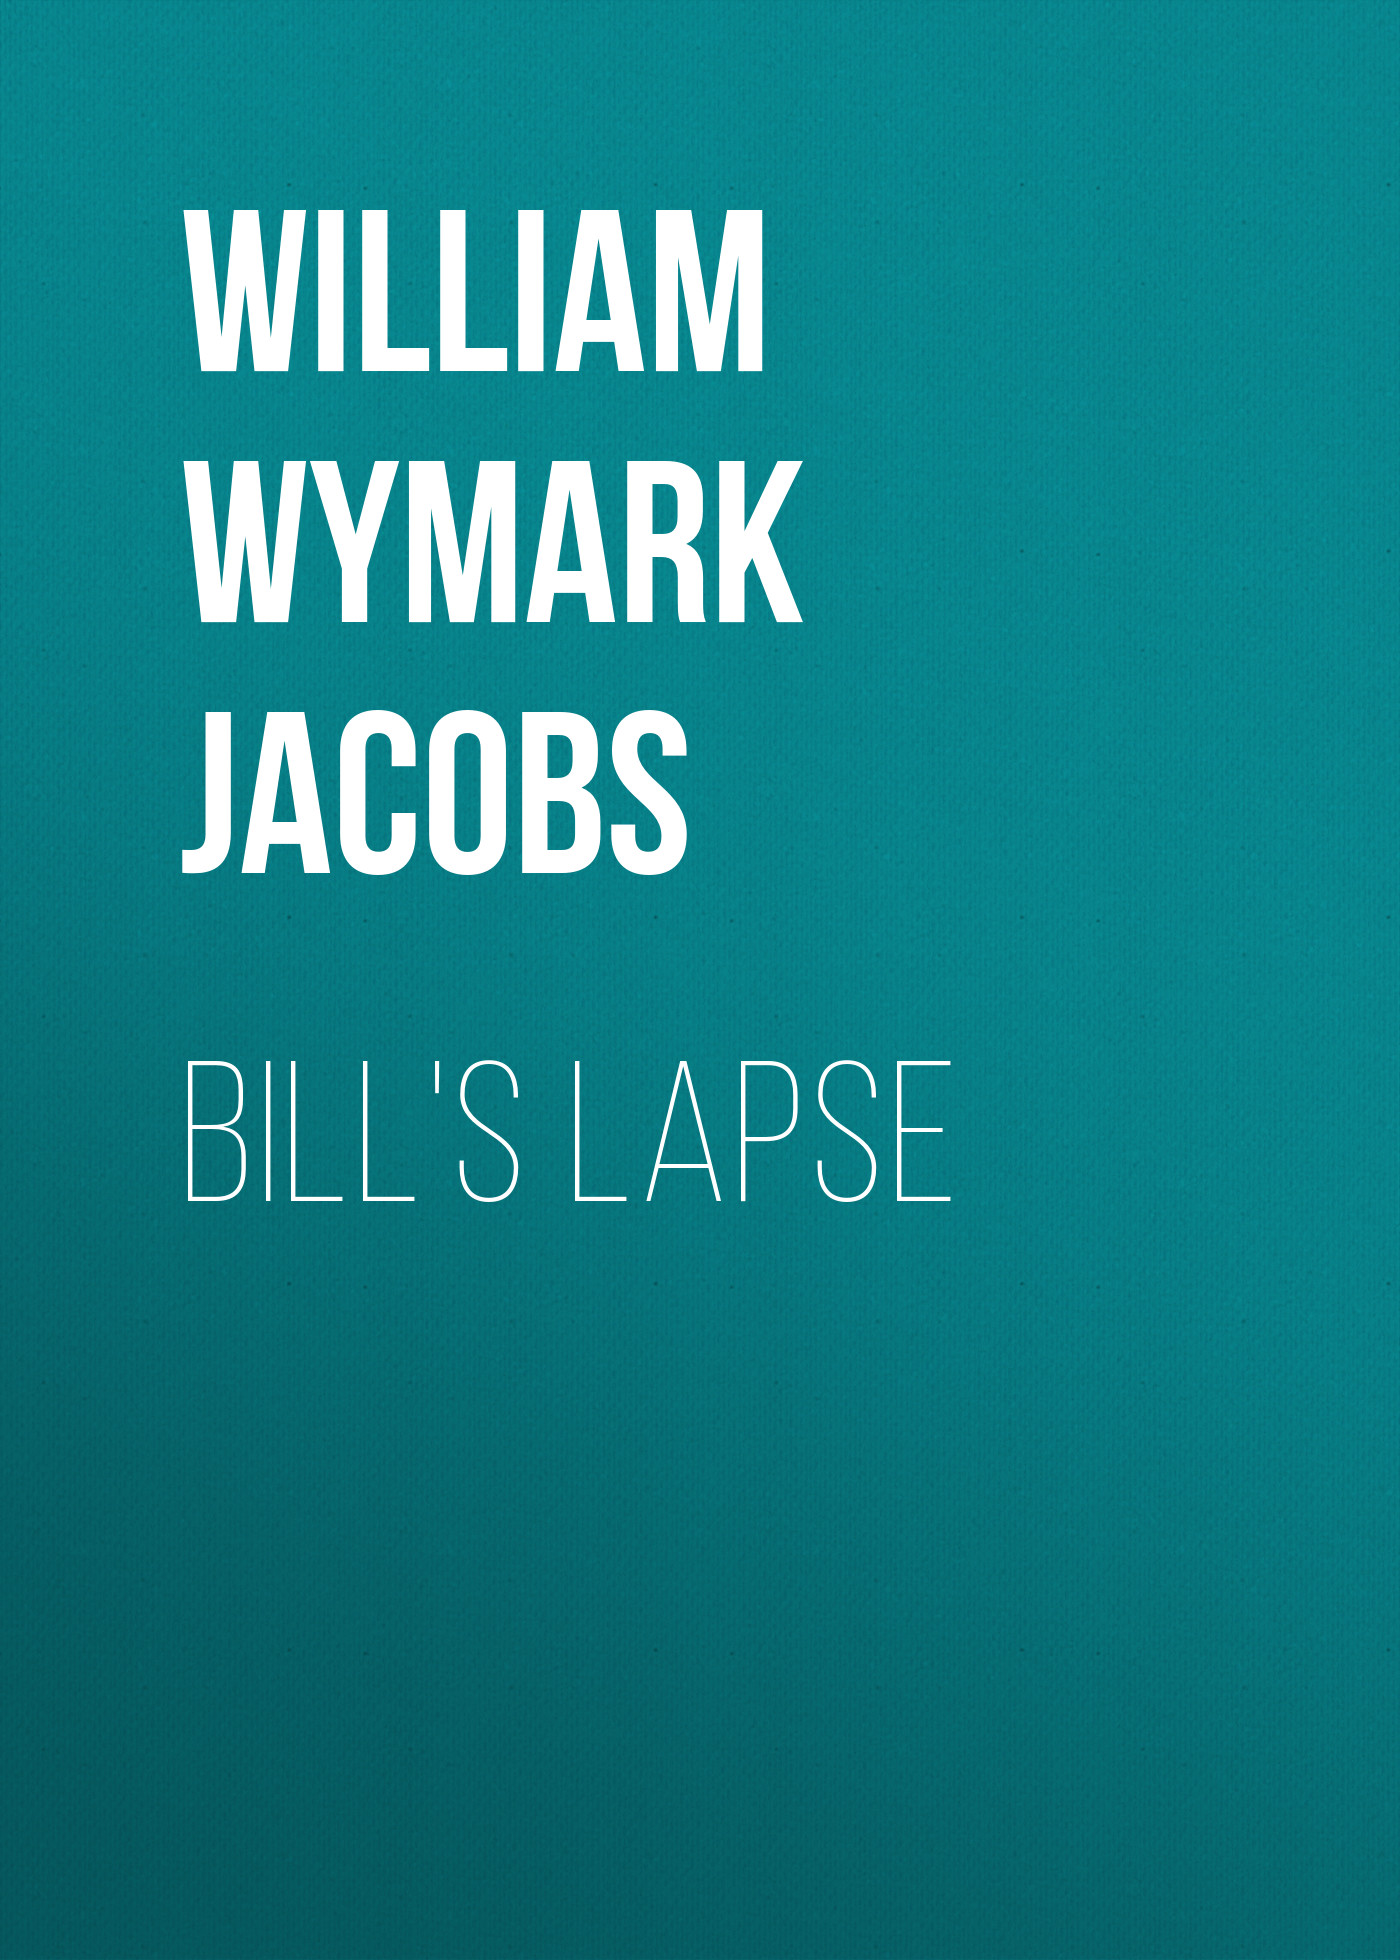 Книга Bill's Lapse из серии , созданная William Wymark Jacobs, может относится к жанру Зарубежный юмор, Зарубежная старинная литература, Зарубежная классика. Стоимость электронной книги Bill's Lapse с идентификатором 34844166 составляет 0 руб.